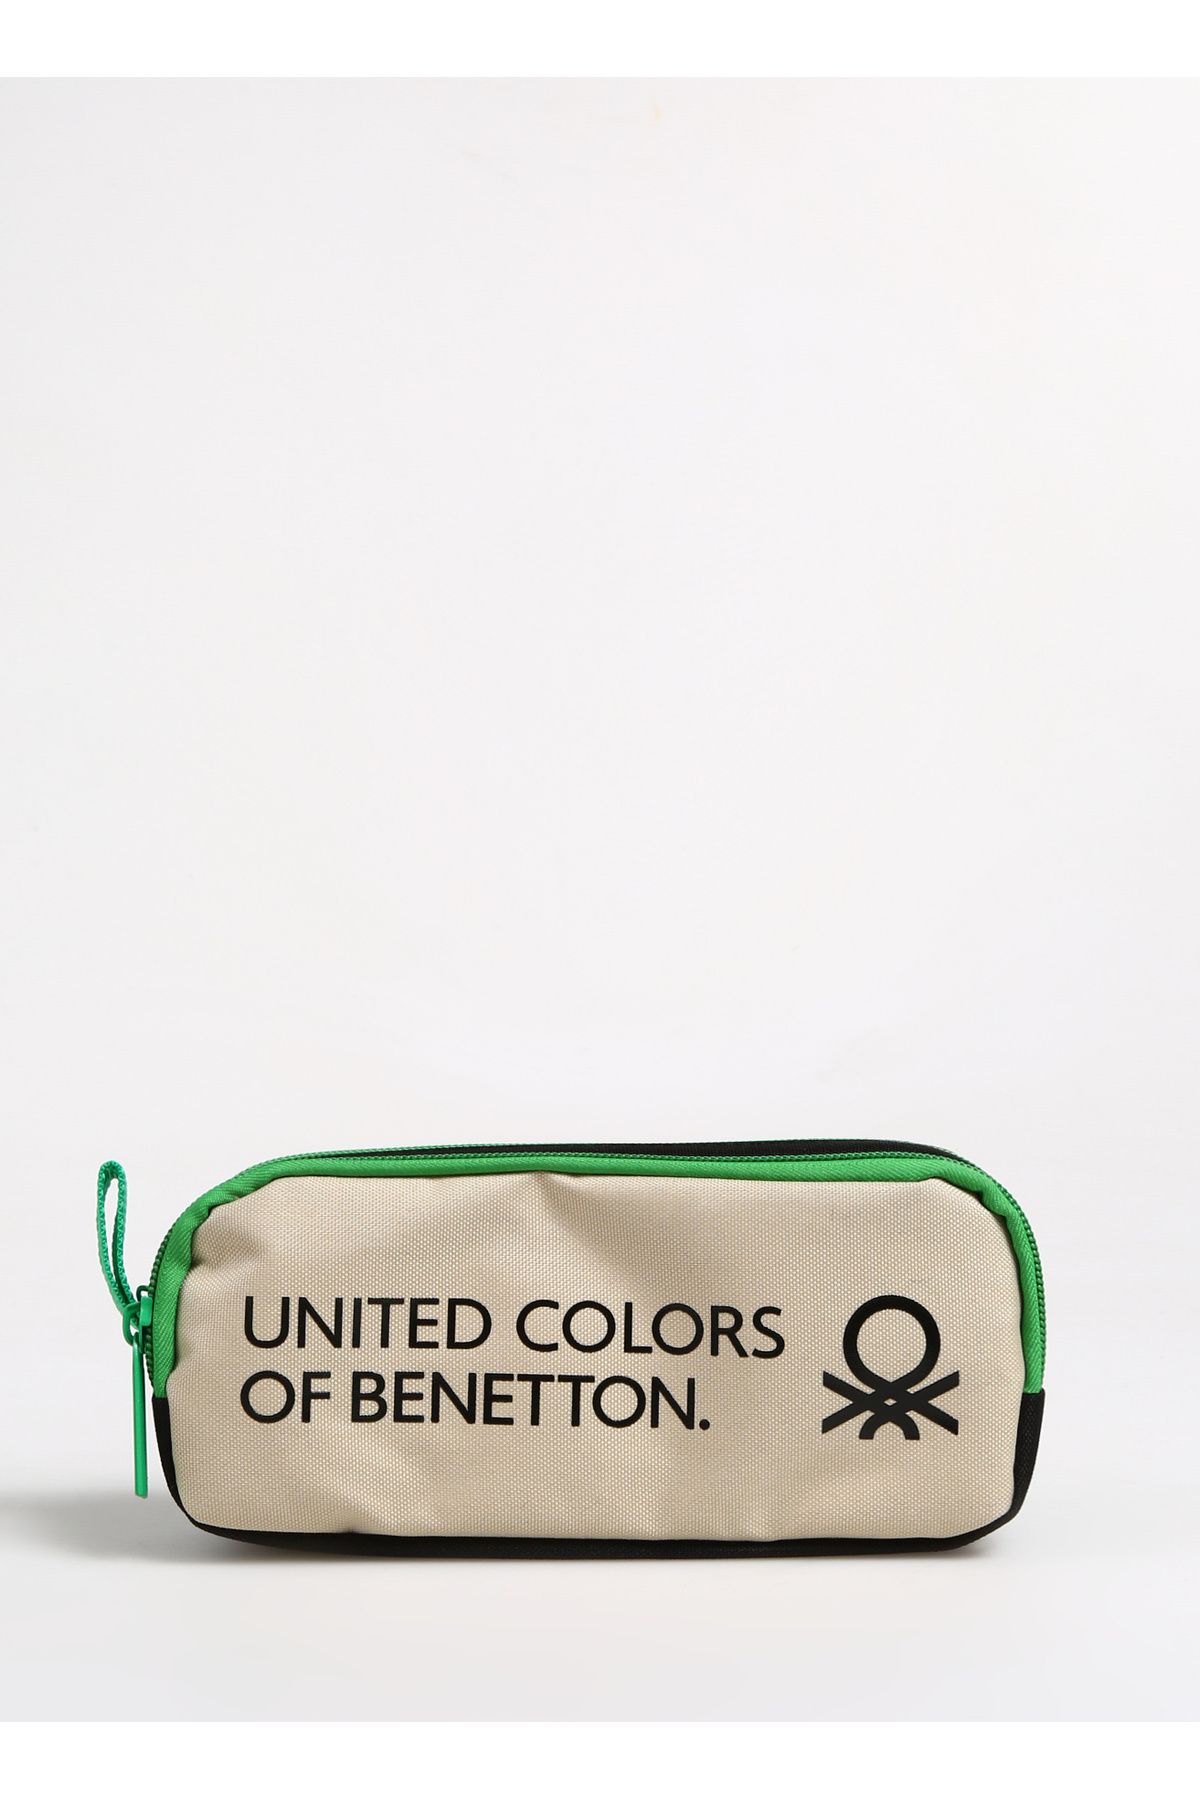 Benetton Siyah - Yeşil Erkek Kalem Çantası BENETTON 3702